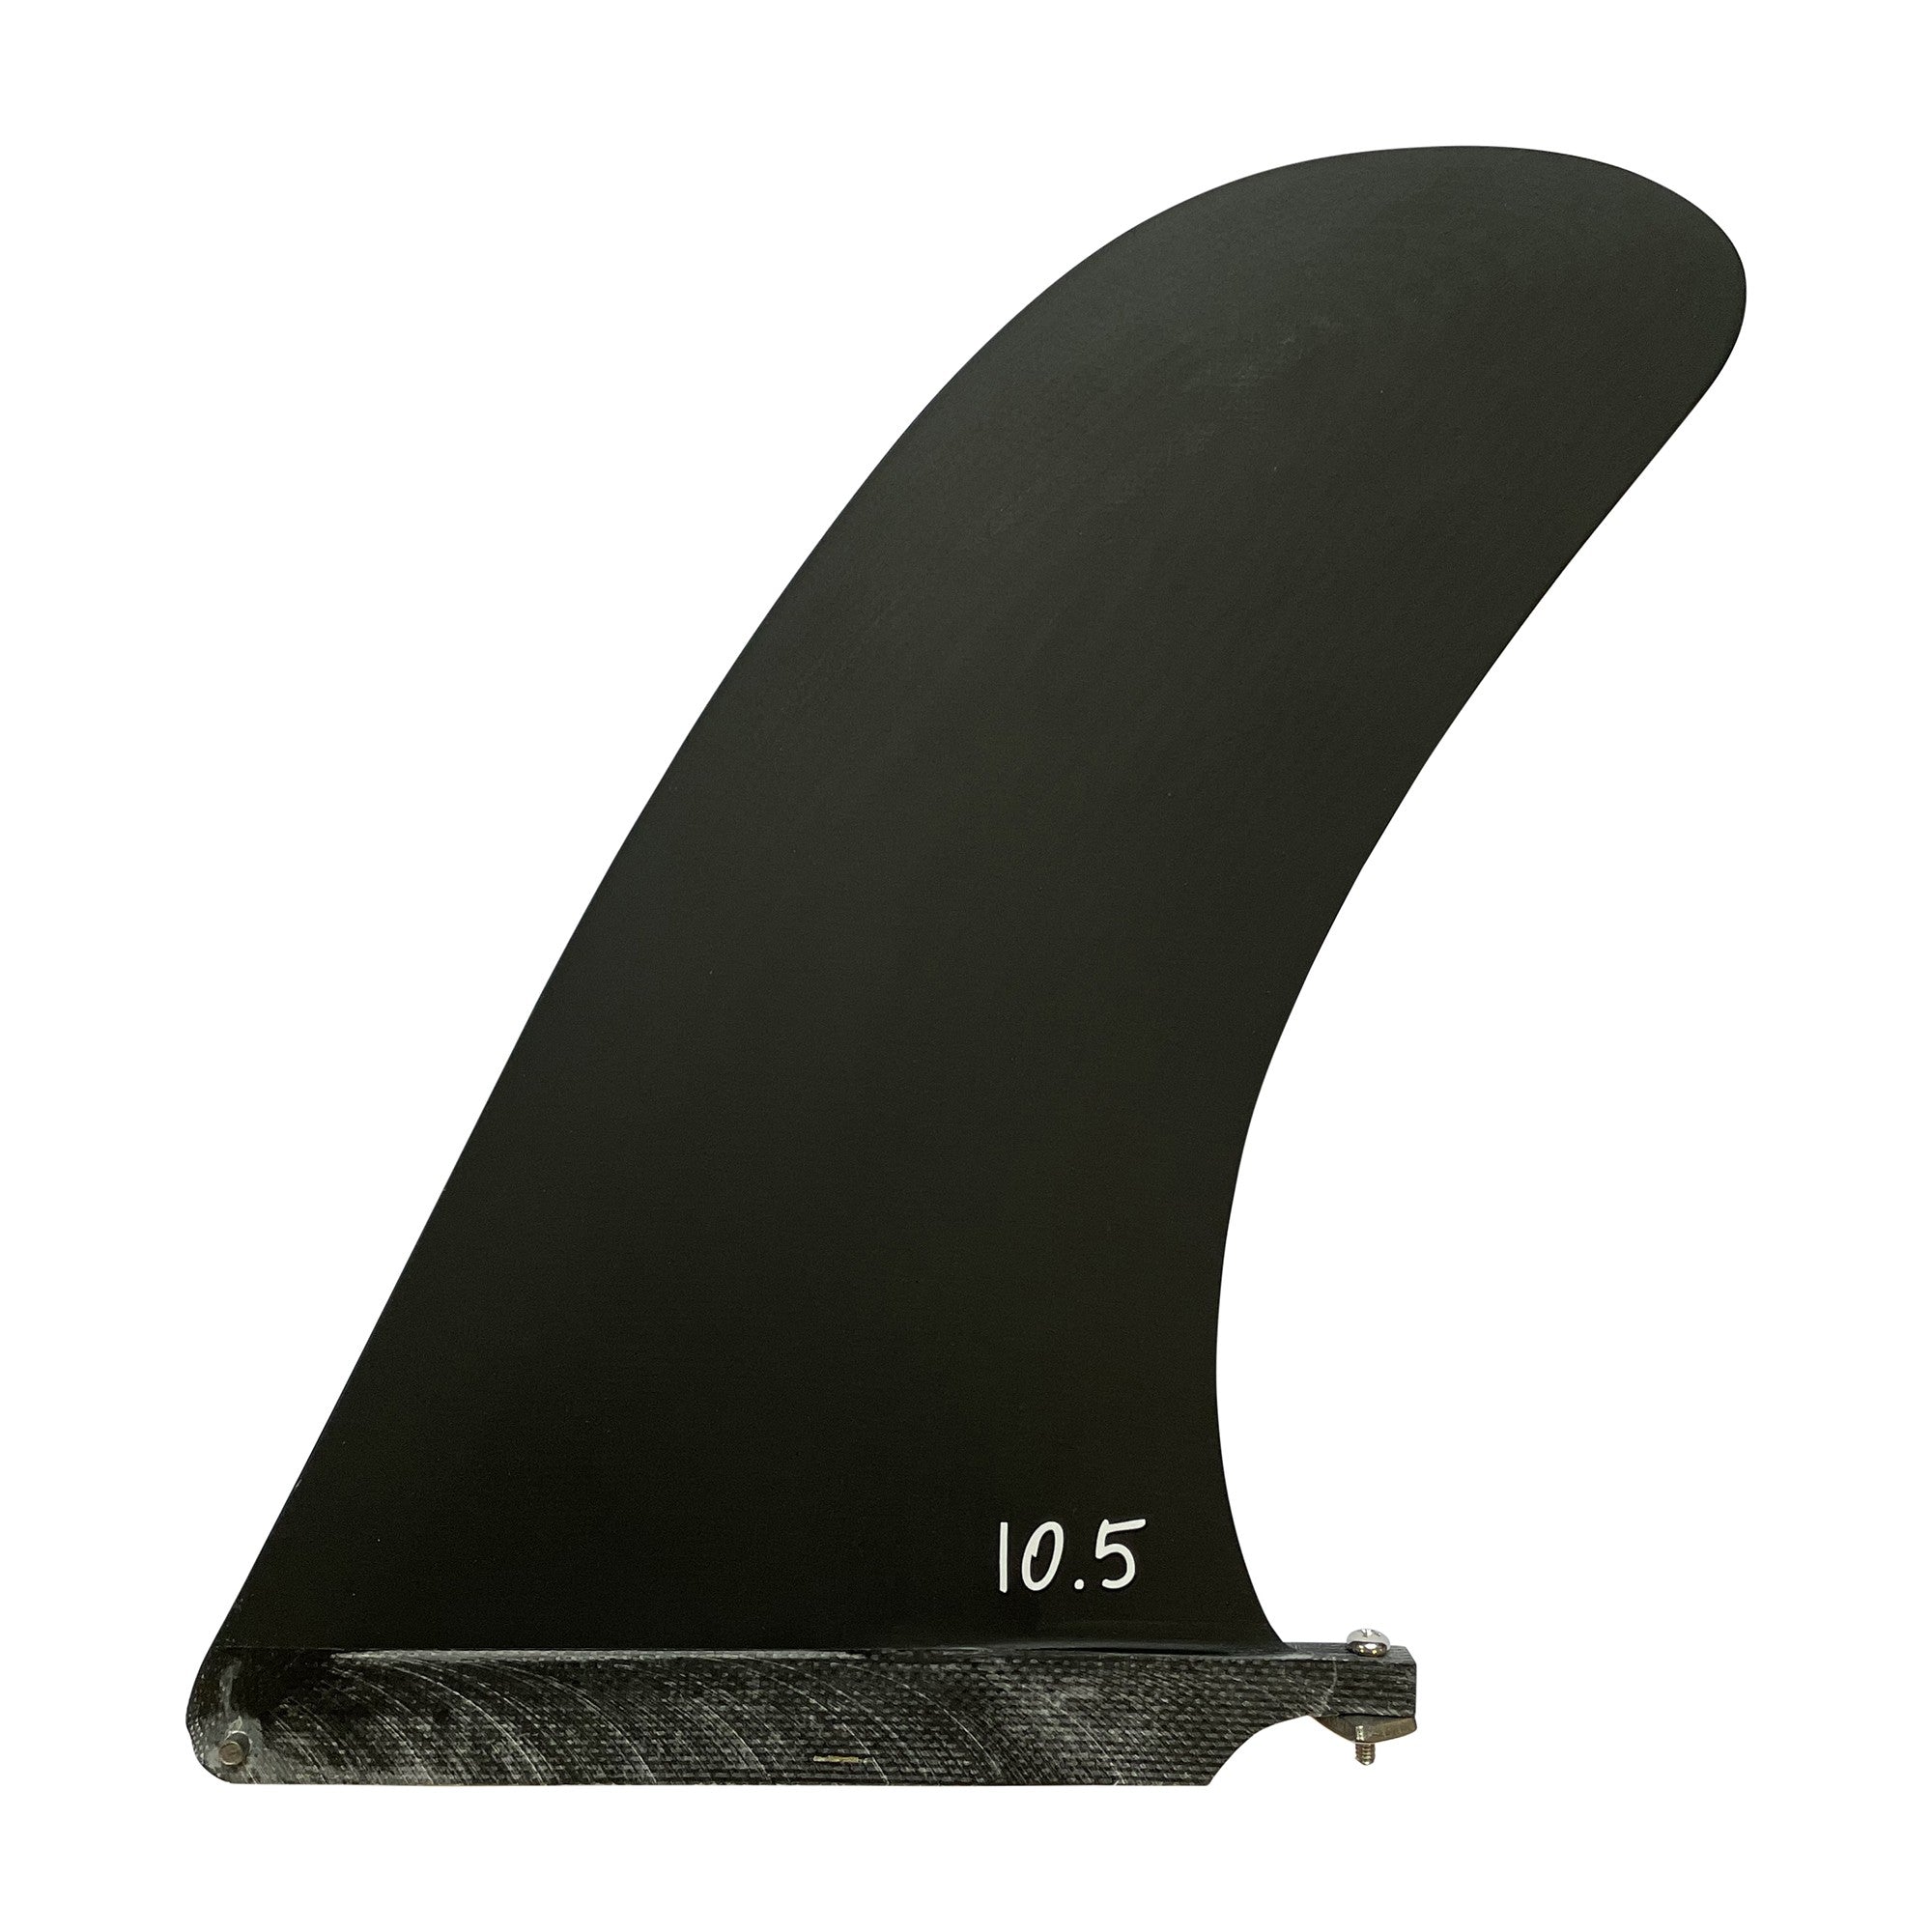 SURF SYSTEM - 10.5 Pivot Fiberglass Single Fin (Us Box) - Black